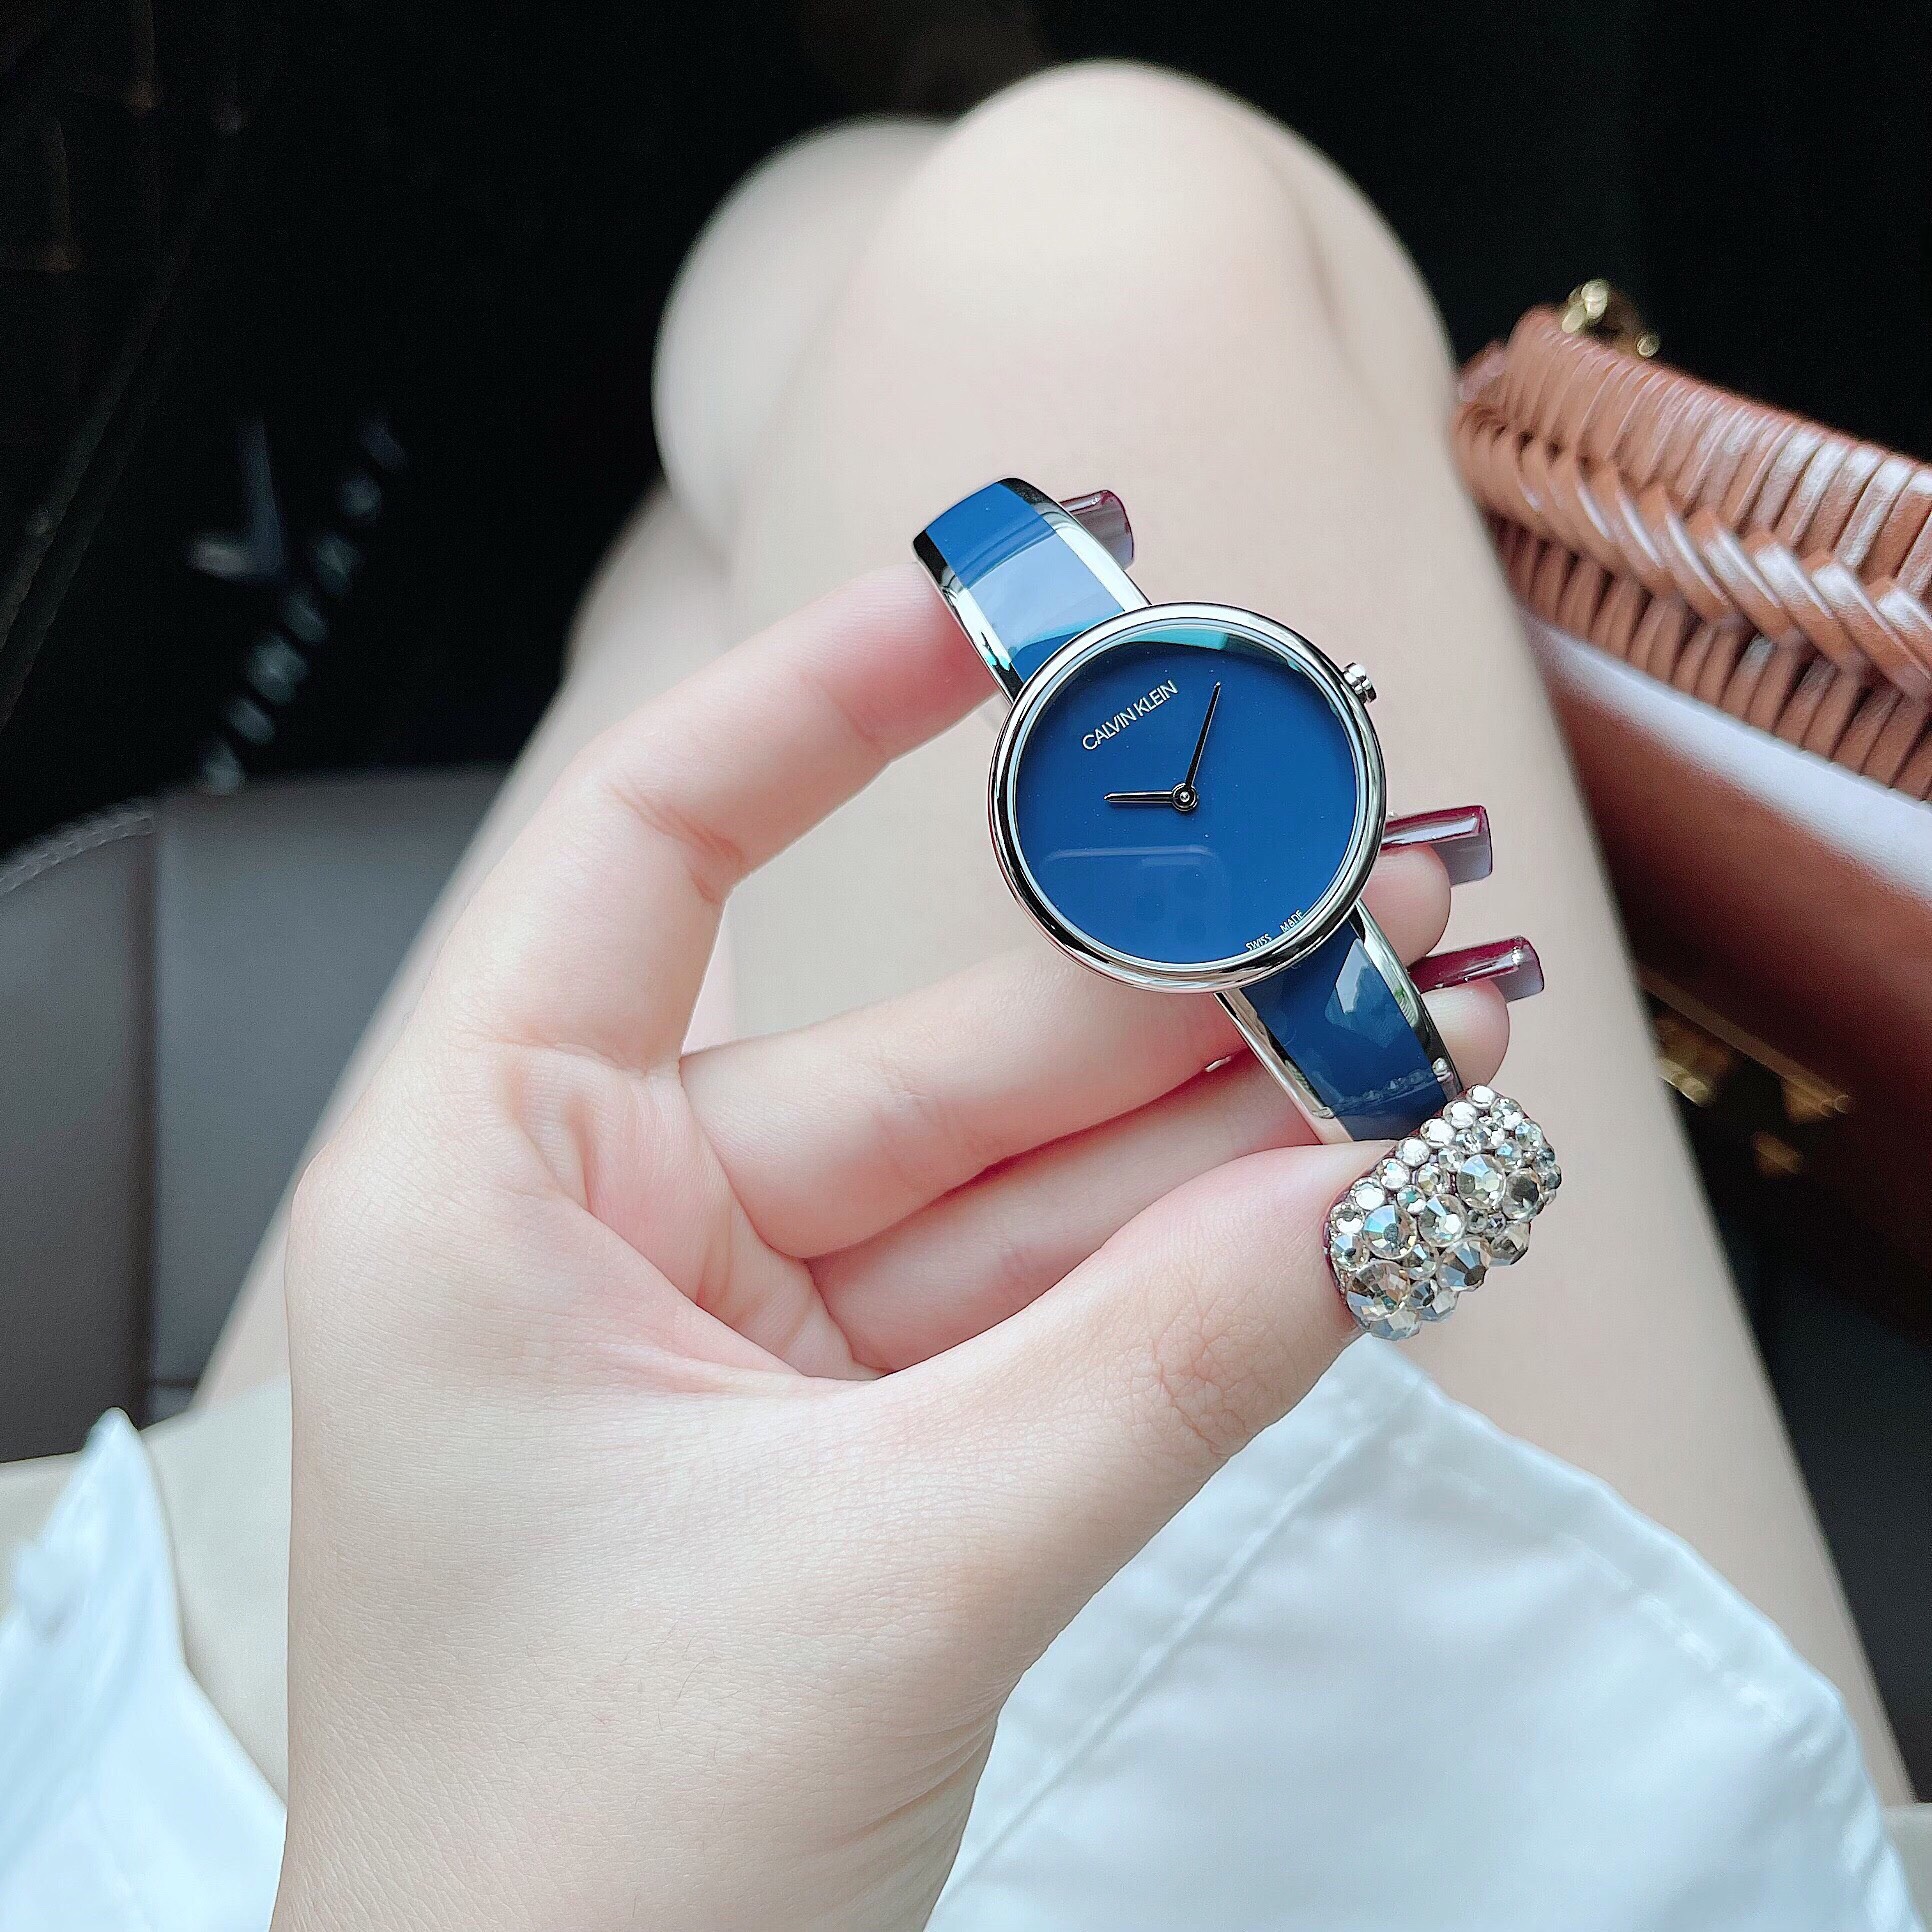 Đồng hồ nữ Calvin Klein dây kiềng màu xanh navy: Sự kỳ diệu của sự hiếm hoi và ghiền mê